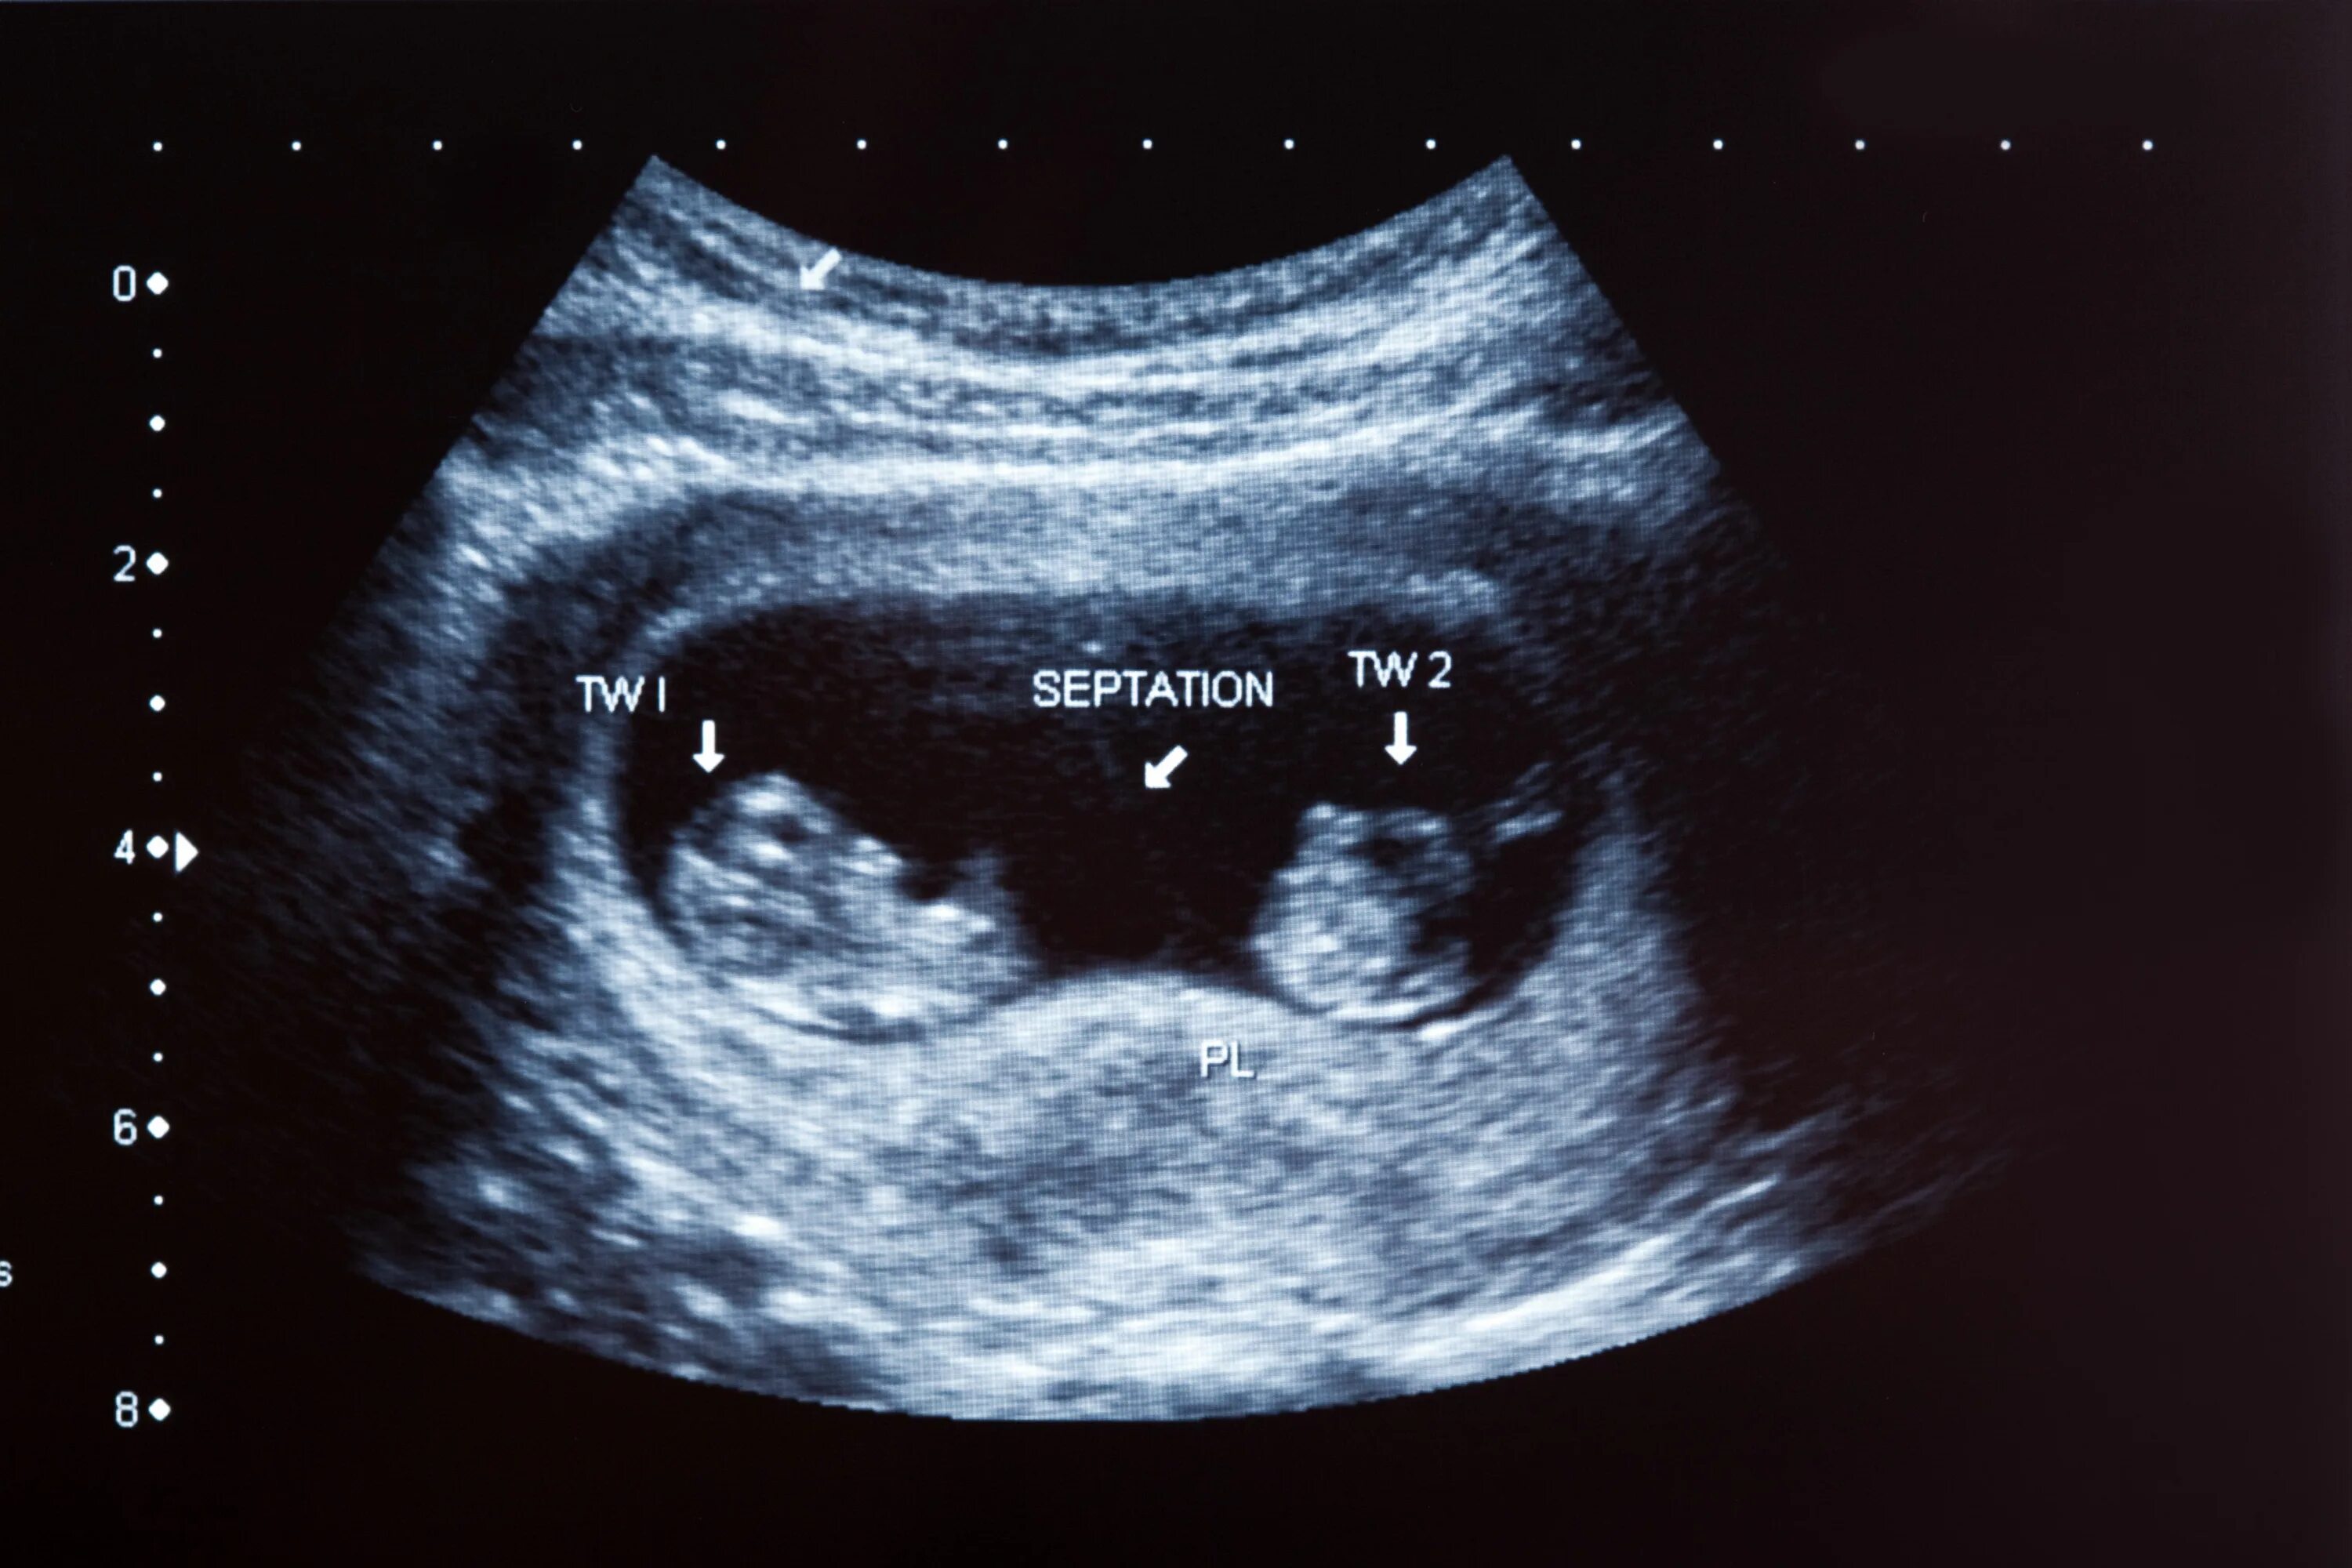 УЗИ 12 недель беременности двойня. УЗИ 10 недель беременности двойня. УЗИ 8 недель беременности двойня. УЗИ 20 недель беременности многоплодная беременность. Гематома 8 неделя